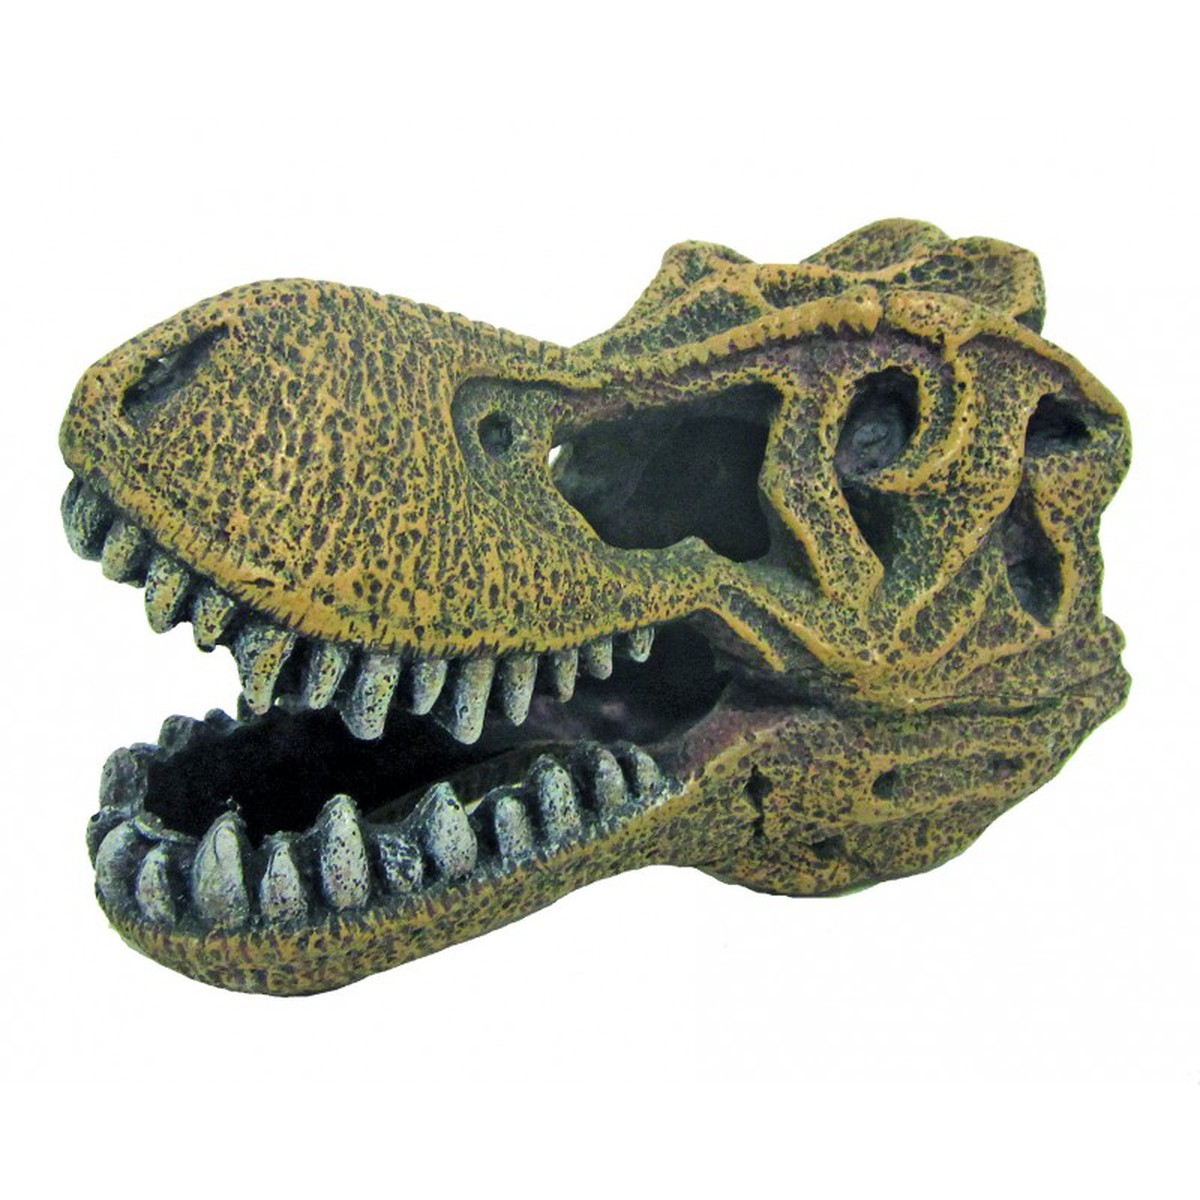   Décoration pour Aquarium  crâne tyrannosaurus  